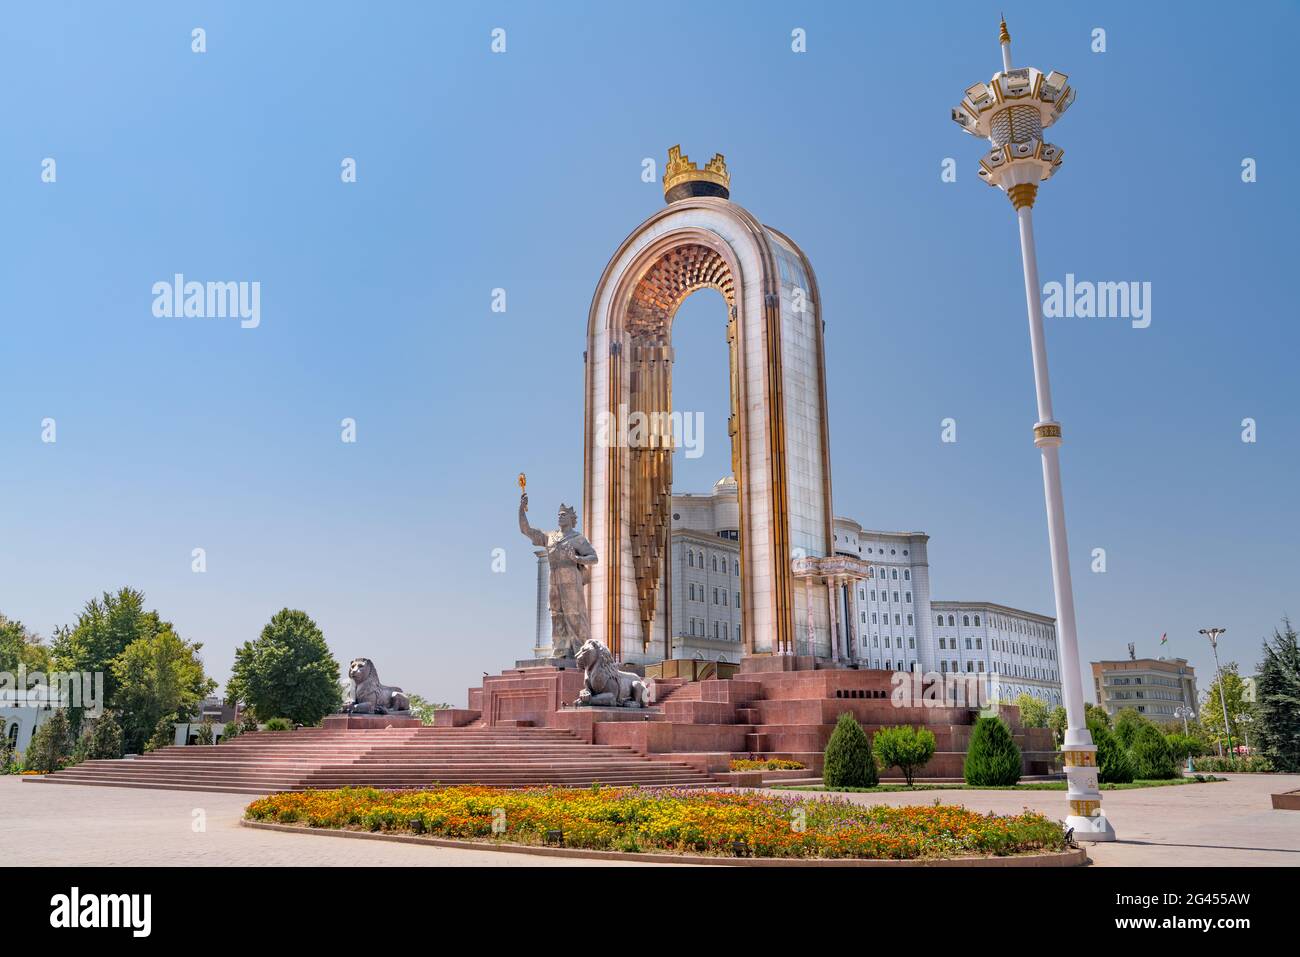 La place centrale dans la capitale du Tadjikistan - Douchanbé. La statue du héros national - recherche Résultats du Web Ismoil Somoni Banque D'Images